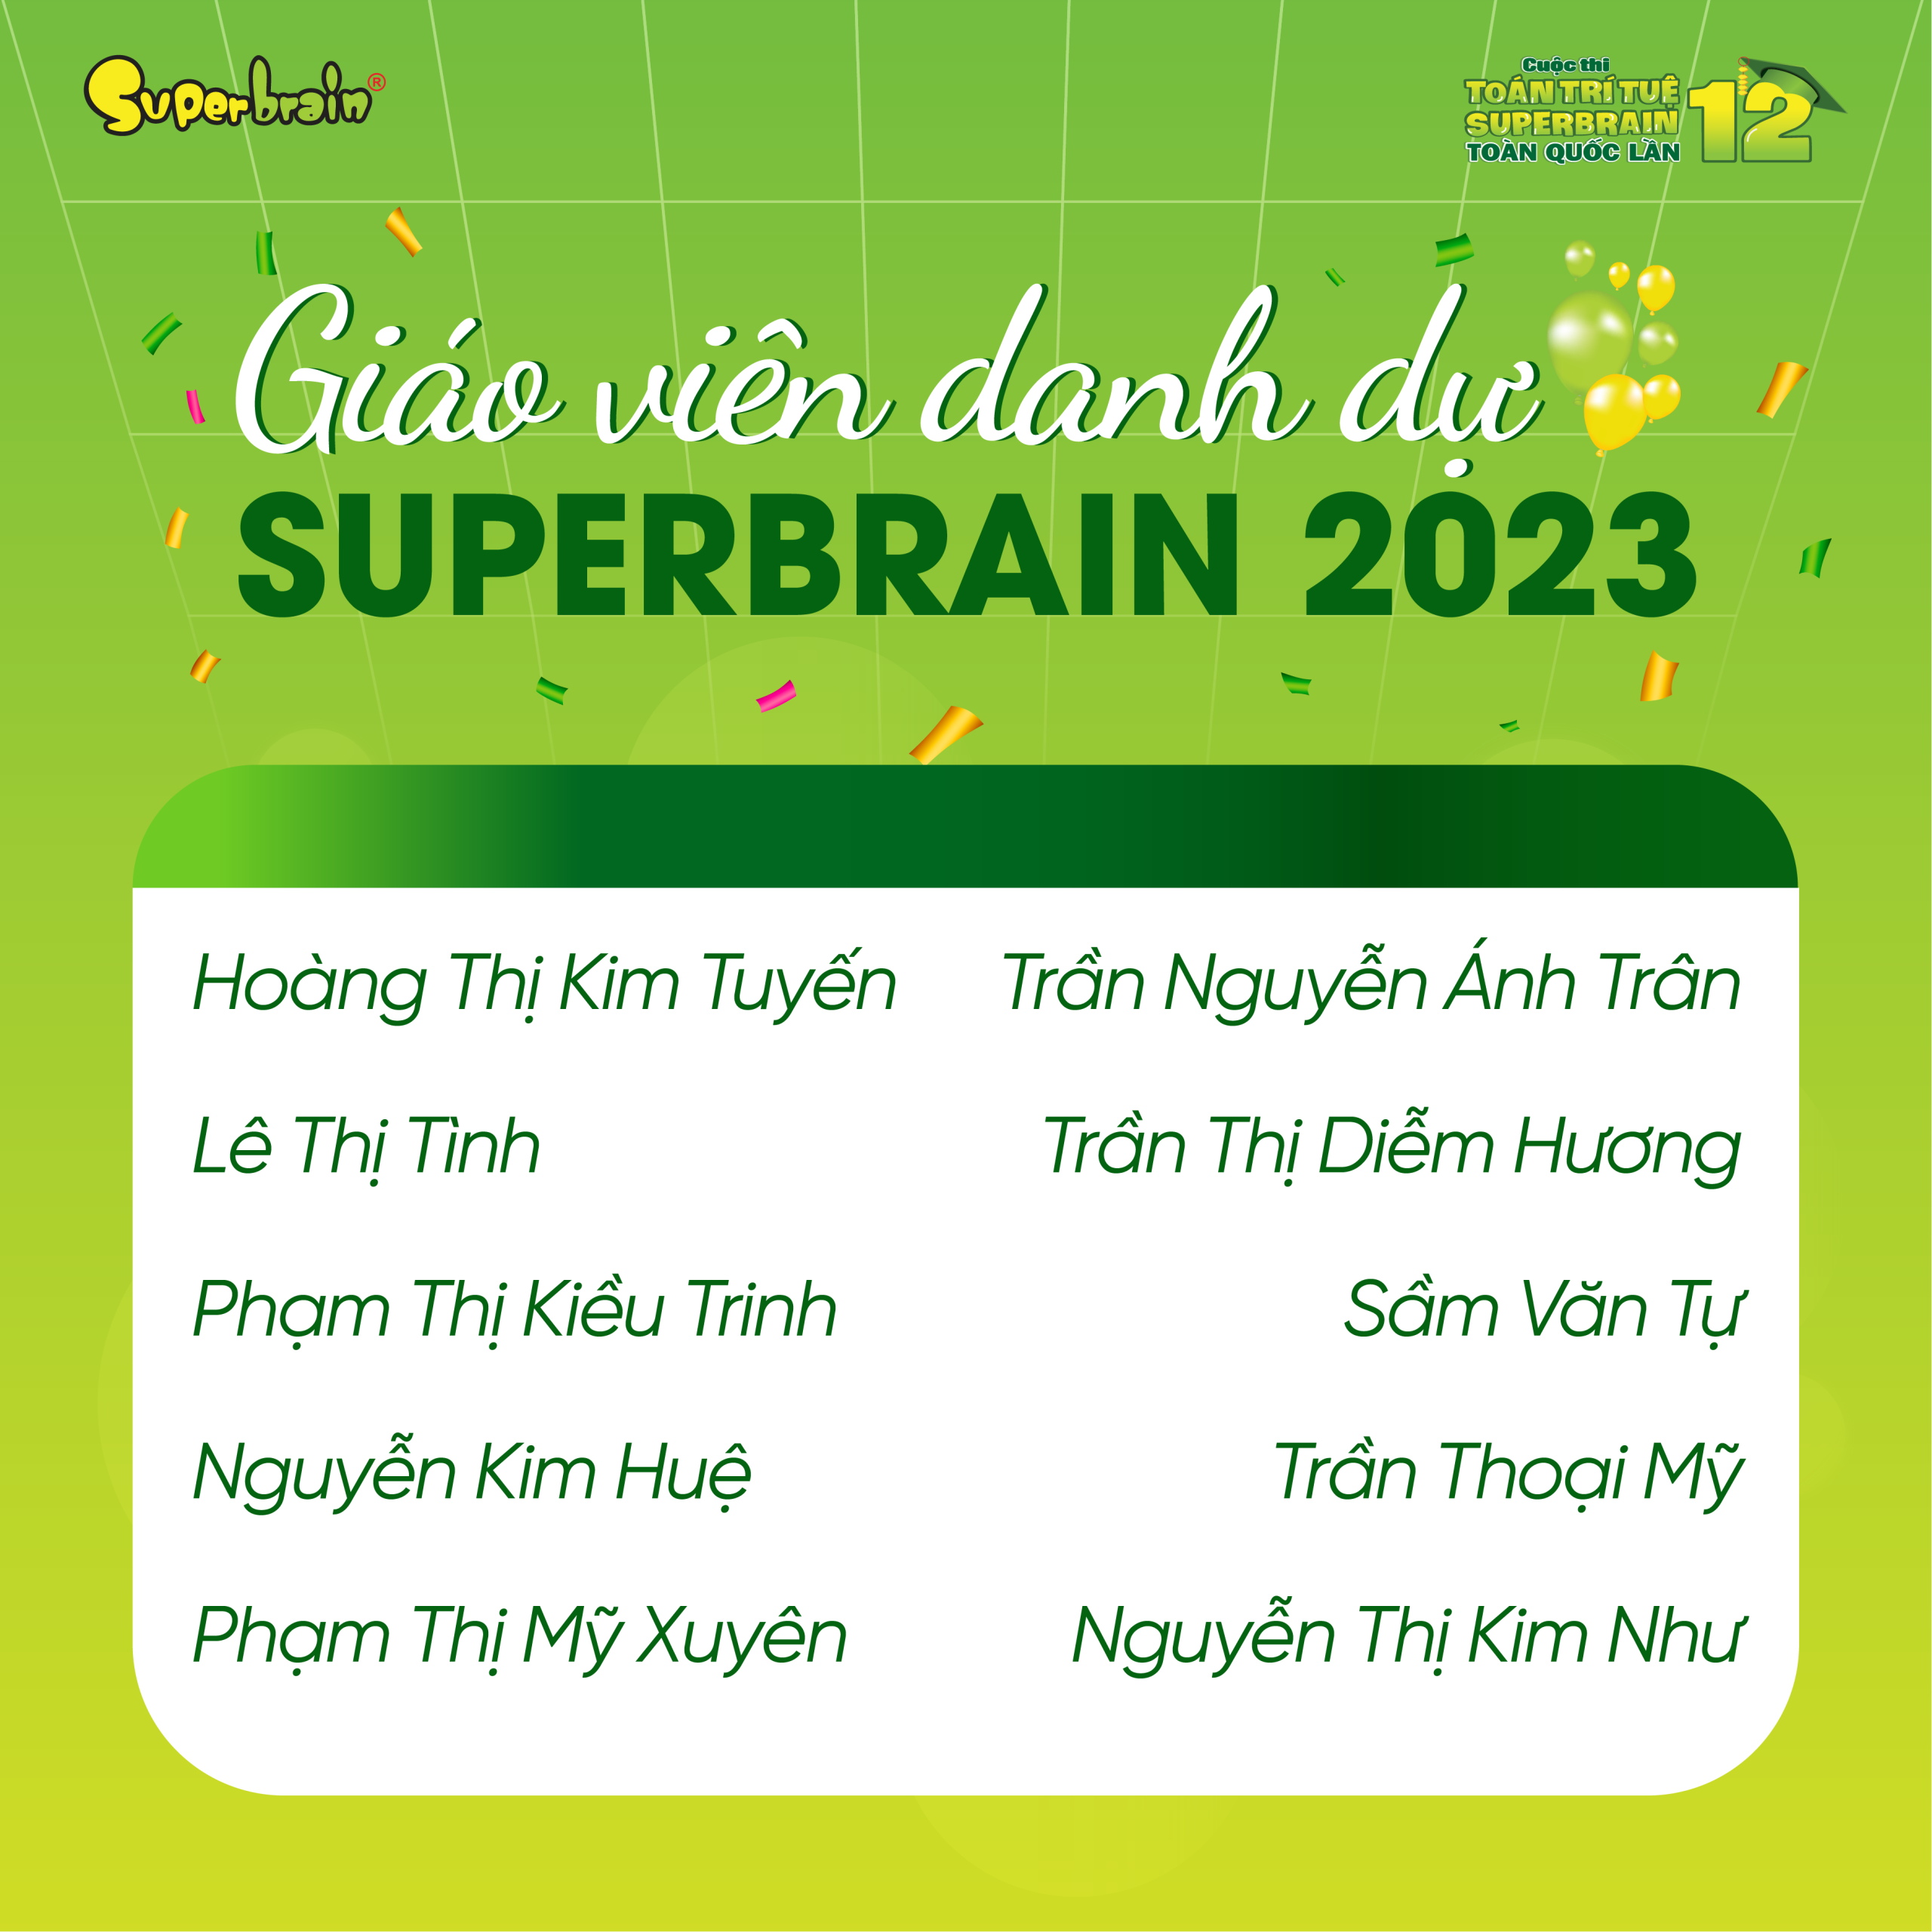 Chúc mừng Giáo viên Superbrain danh dự năm 2023 (1)